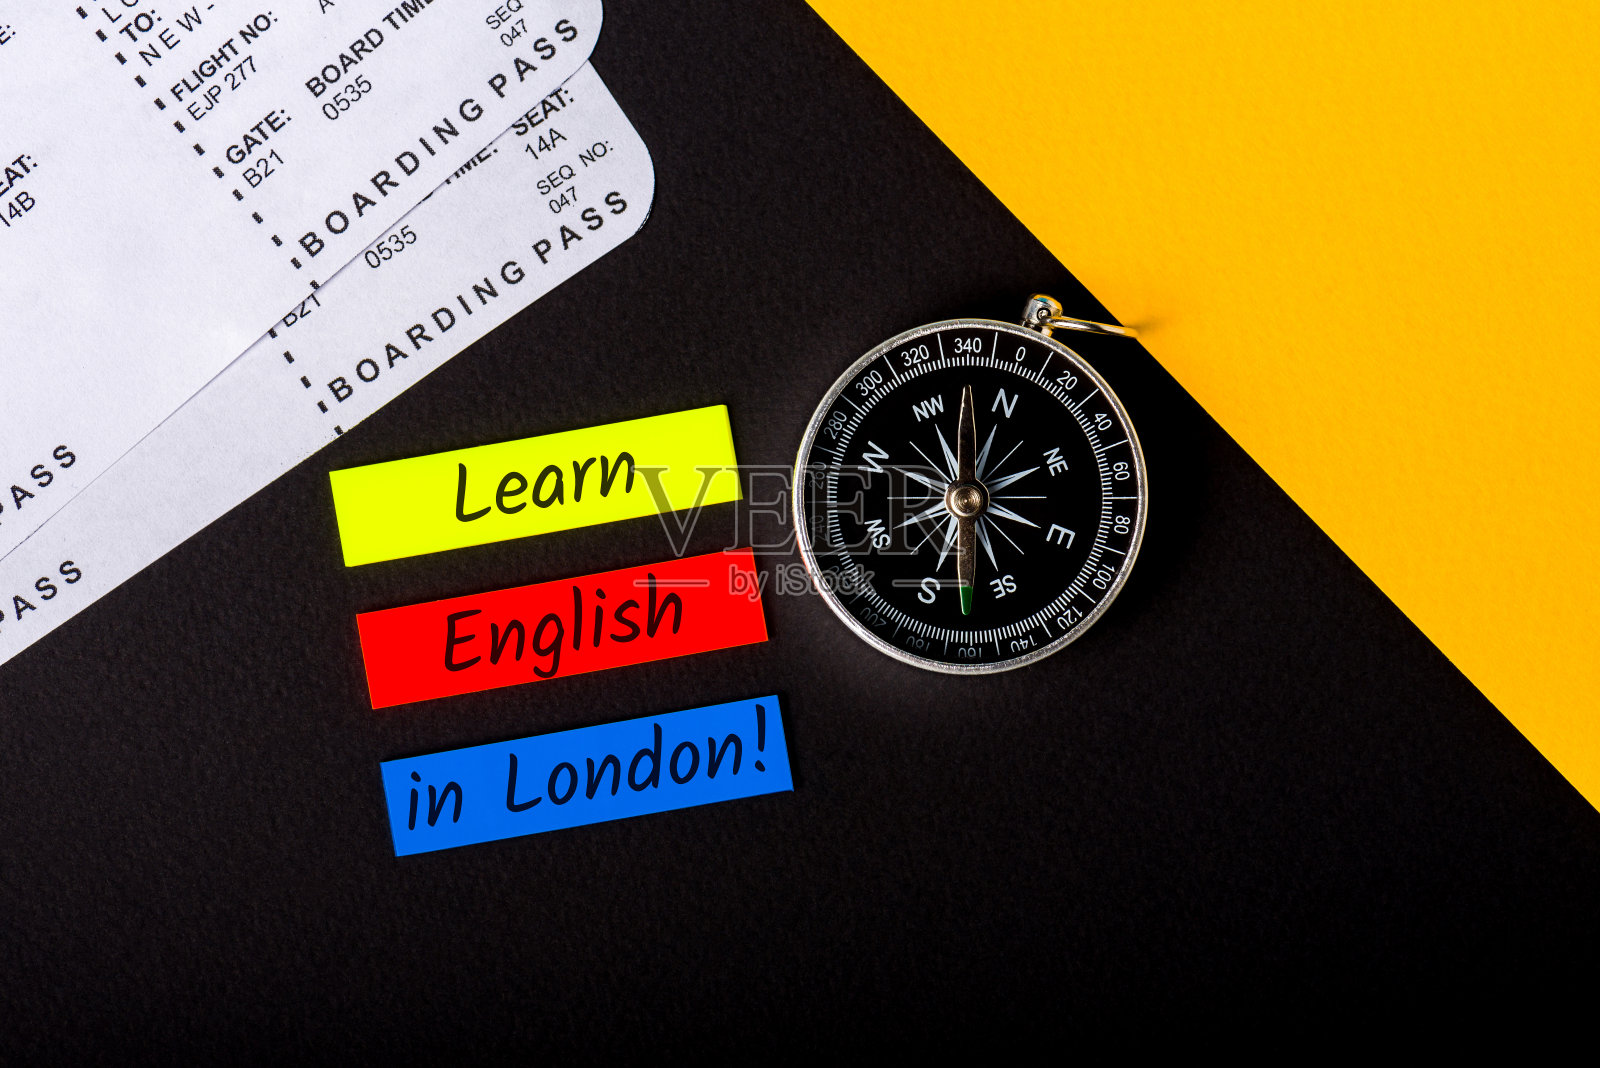 去伦敦学英语。在英国学习英语。旅行是为了学习一门语言照片摄影图片